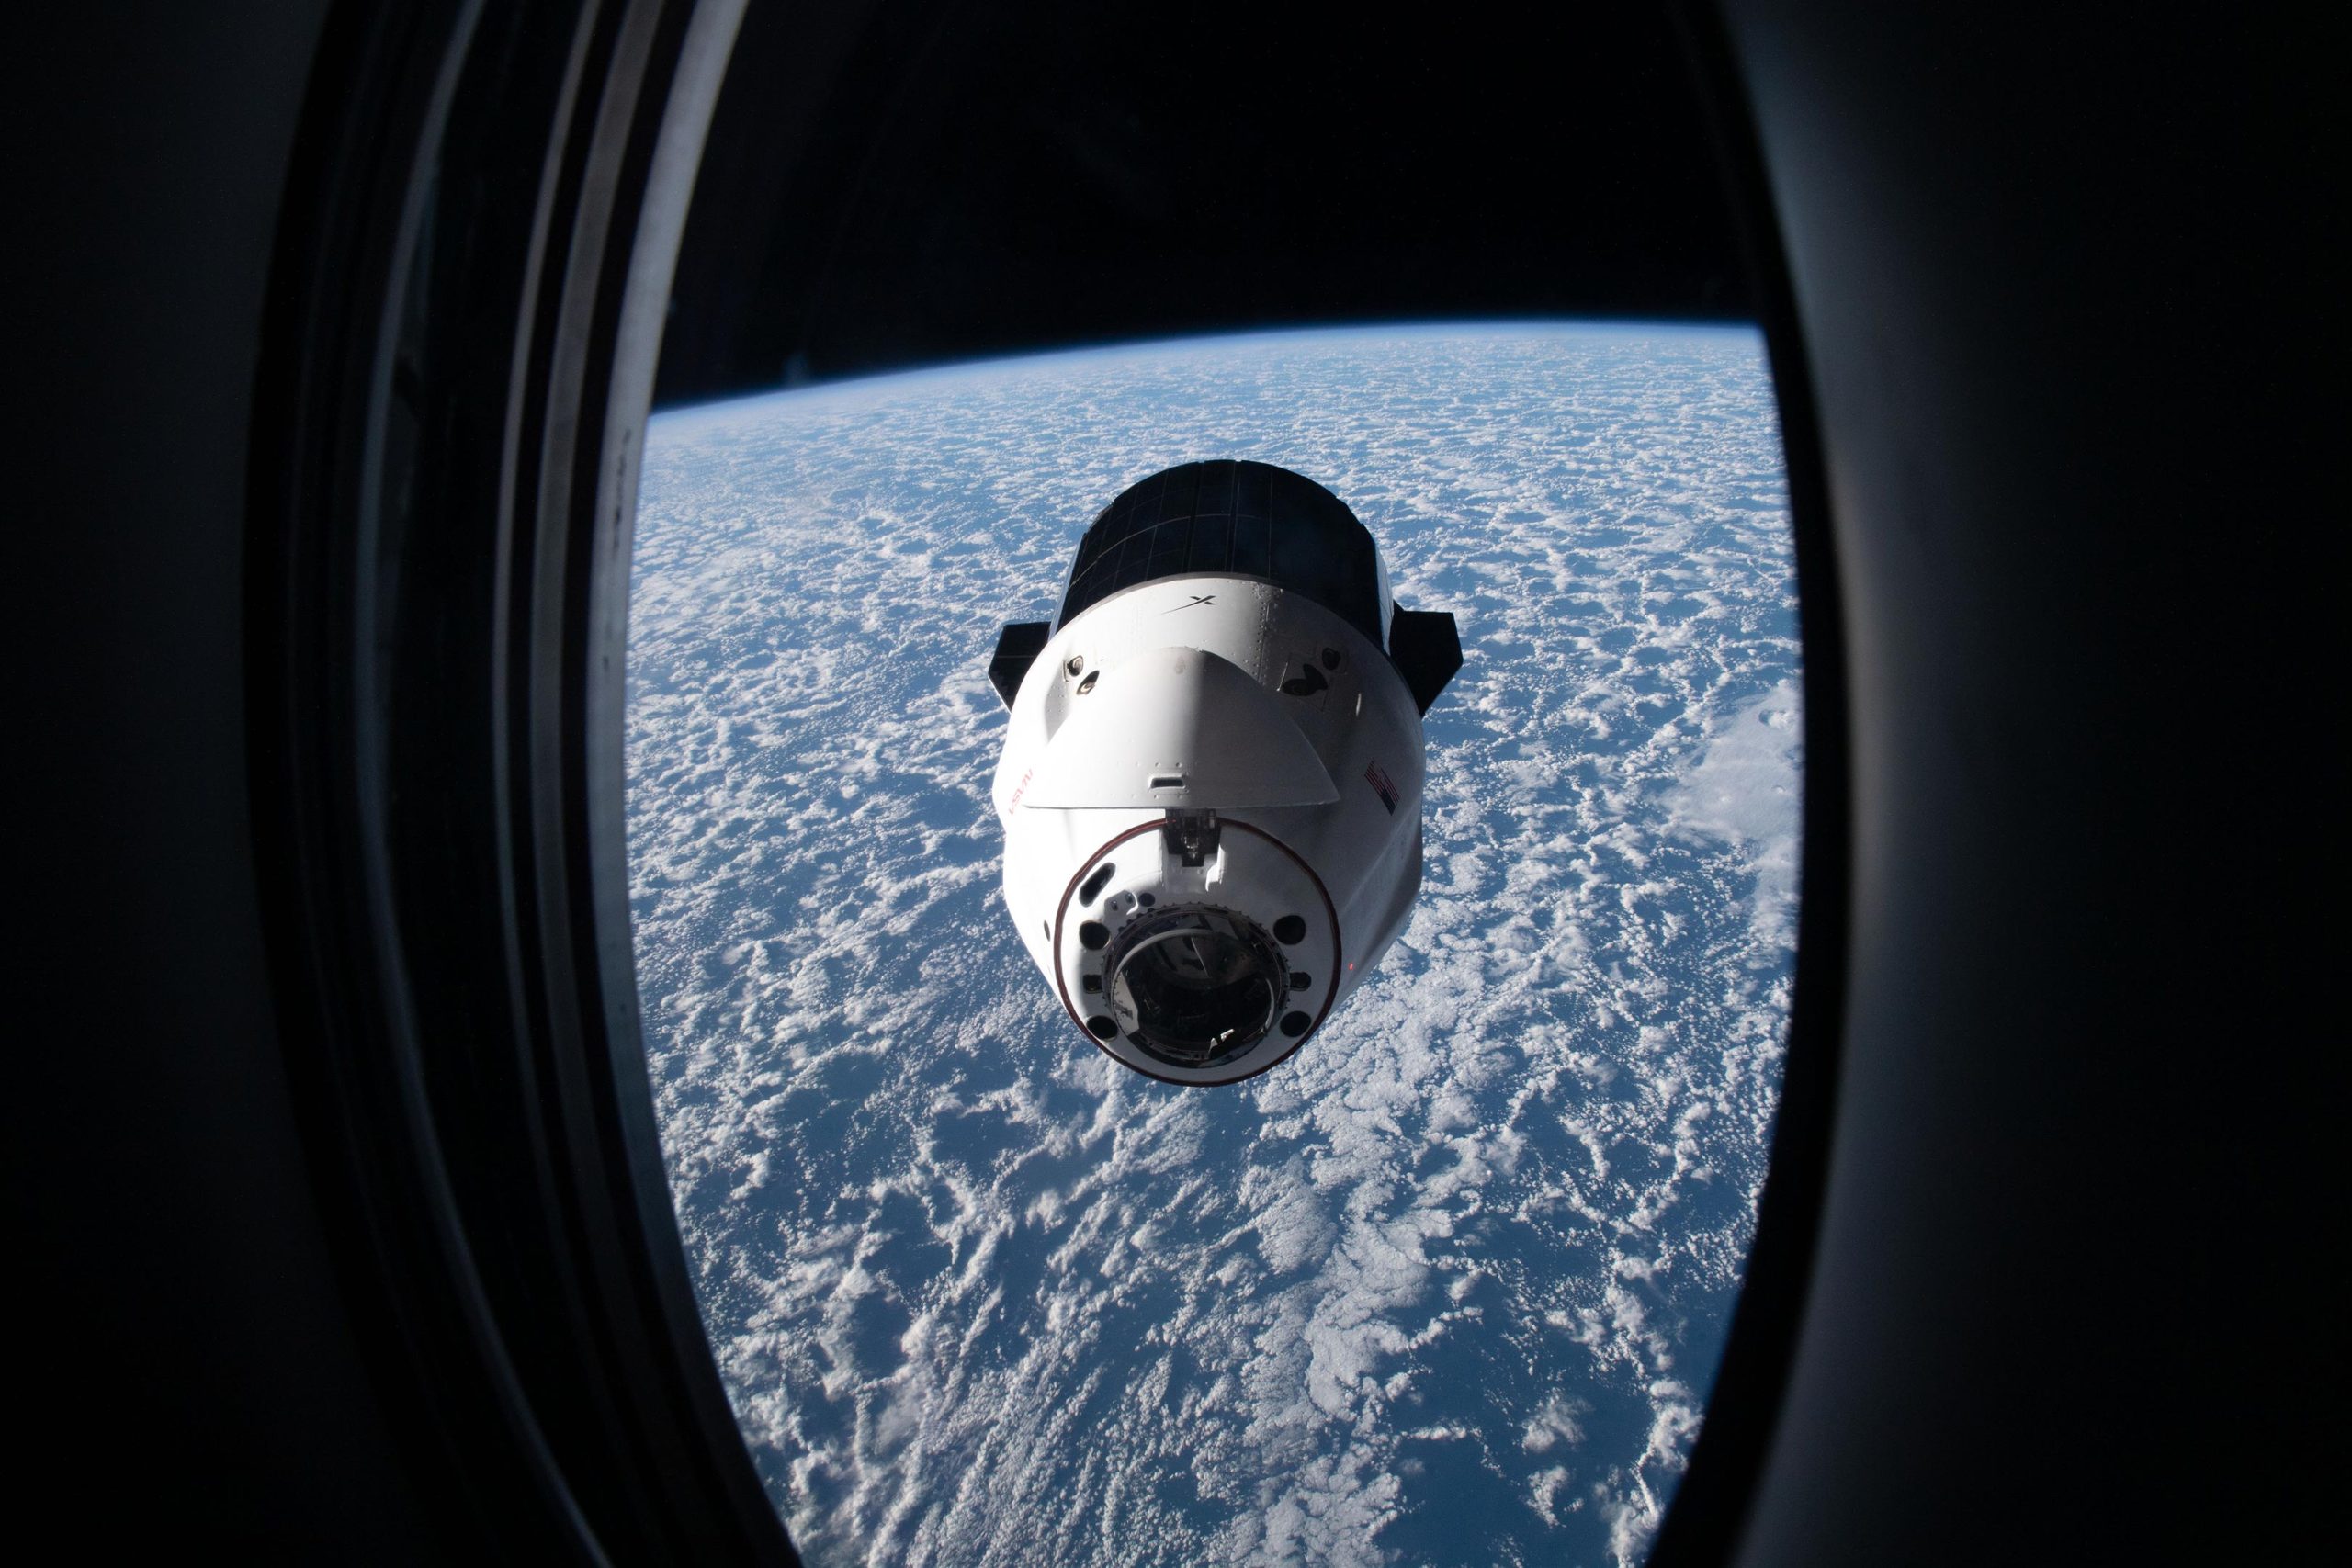 SpaceX Dragon is bezaaid met wetenschappelijke koopwaar om te analyseren